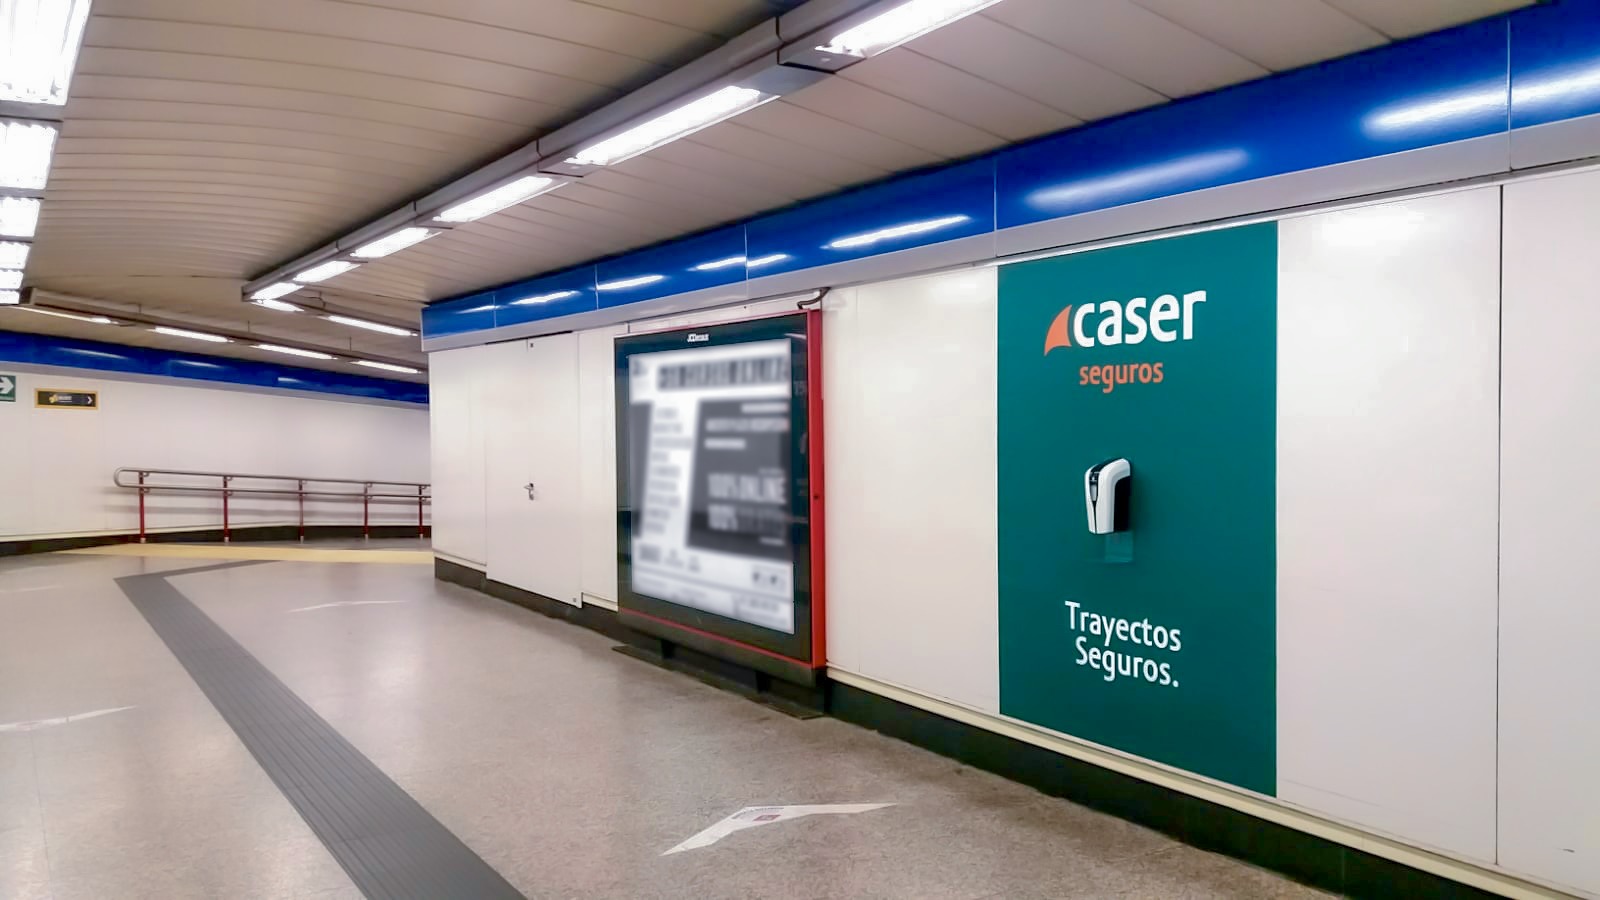 Caser Seguros Se Cuela En El Metro De Madrid Con Sus Trayectos Seguros